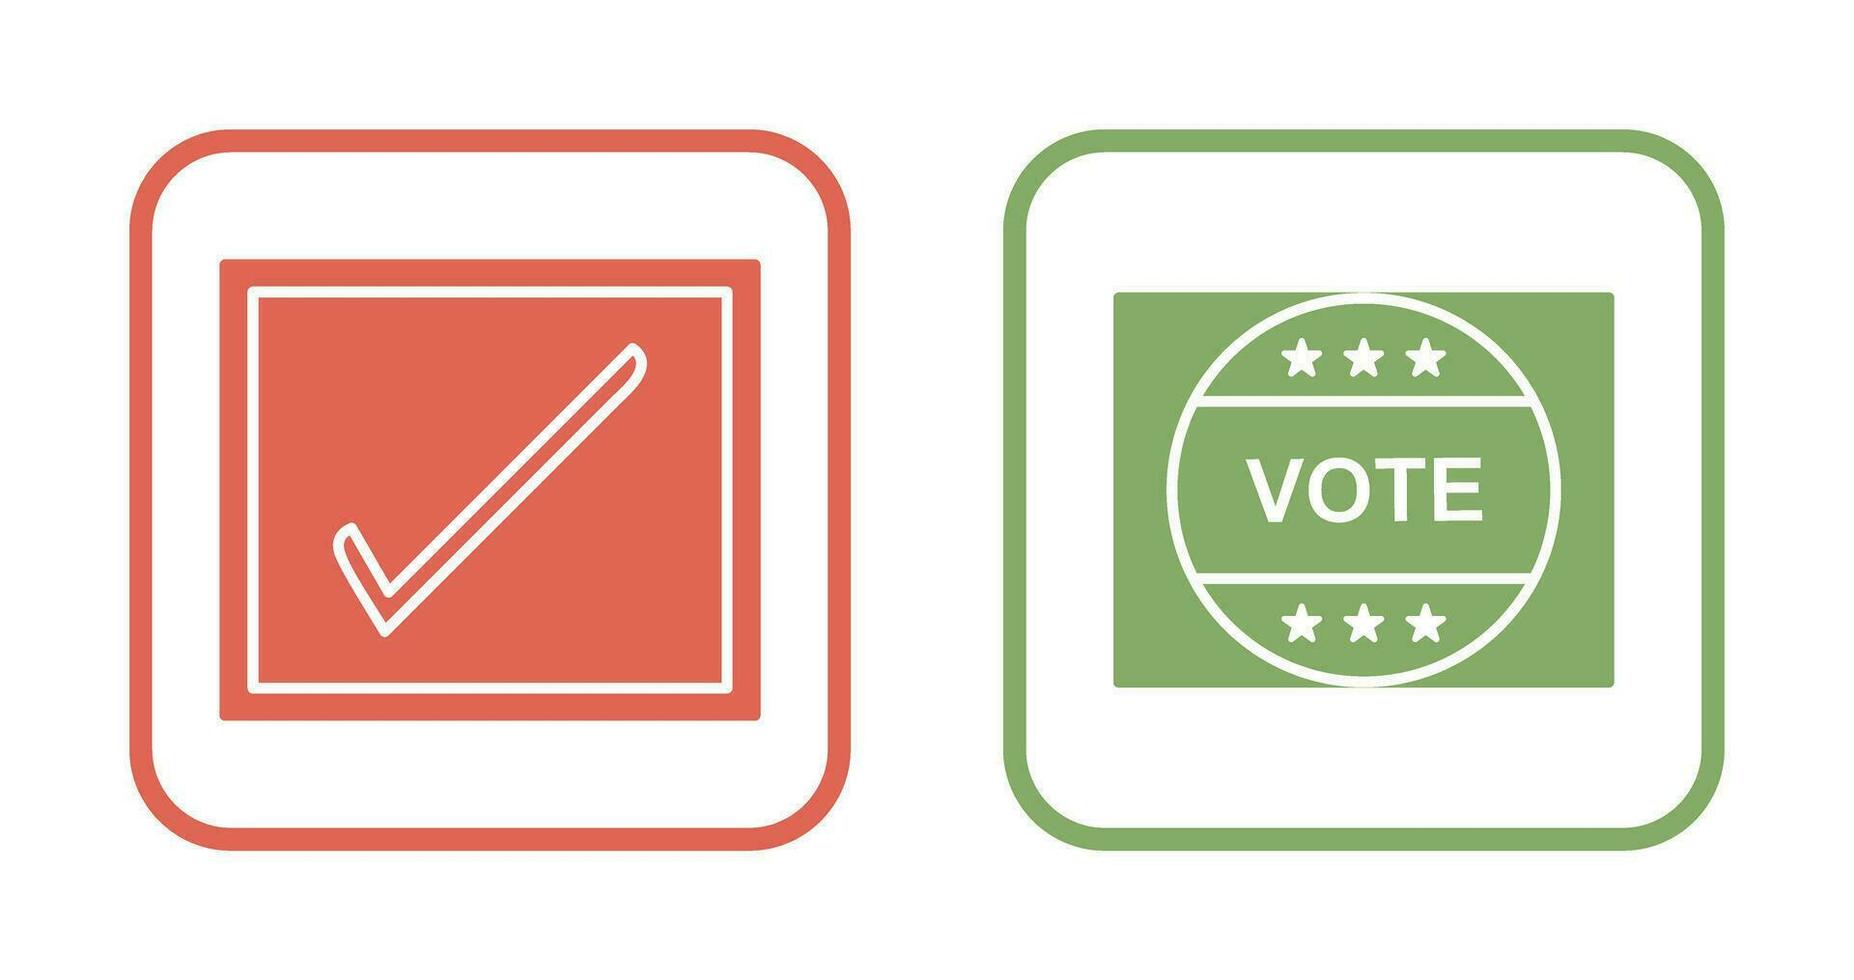 Checkbox and Vote Sticker Icon vector